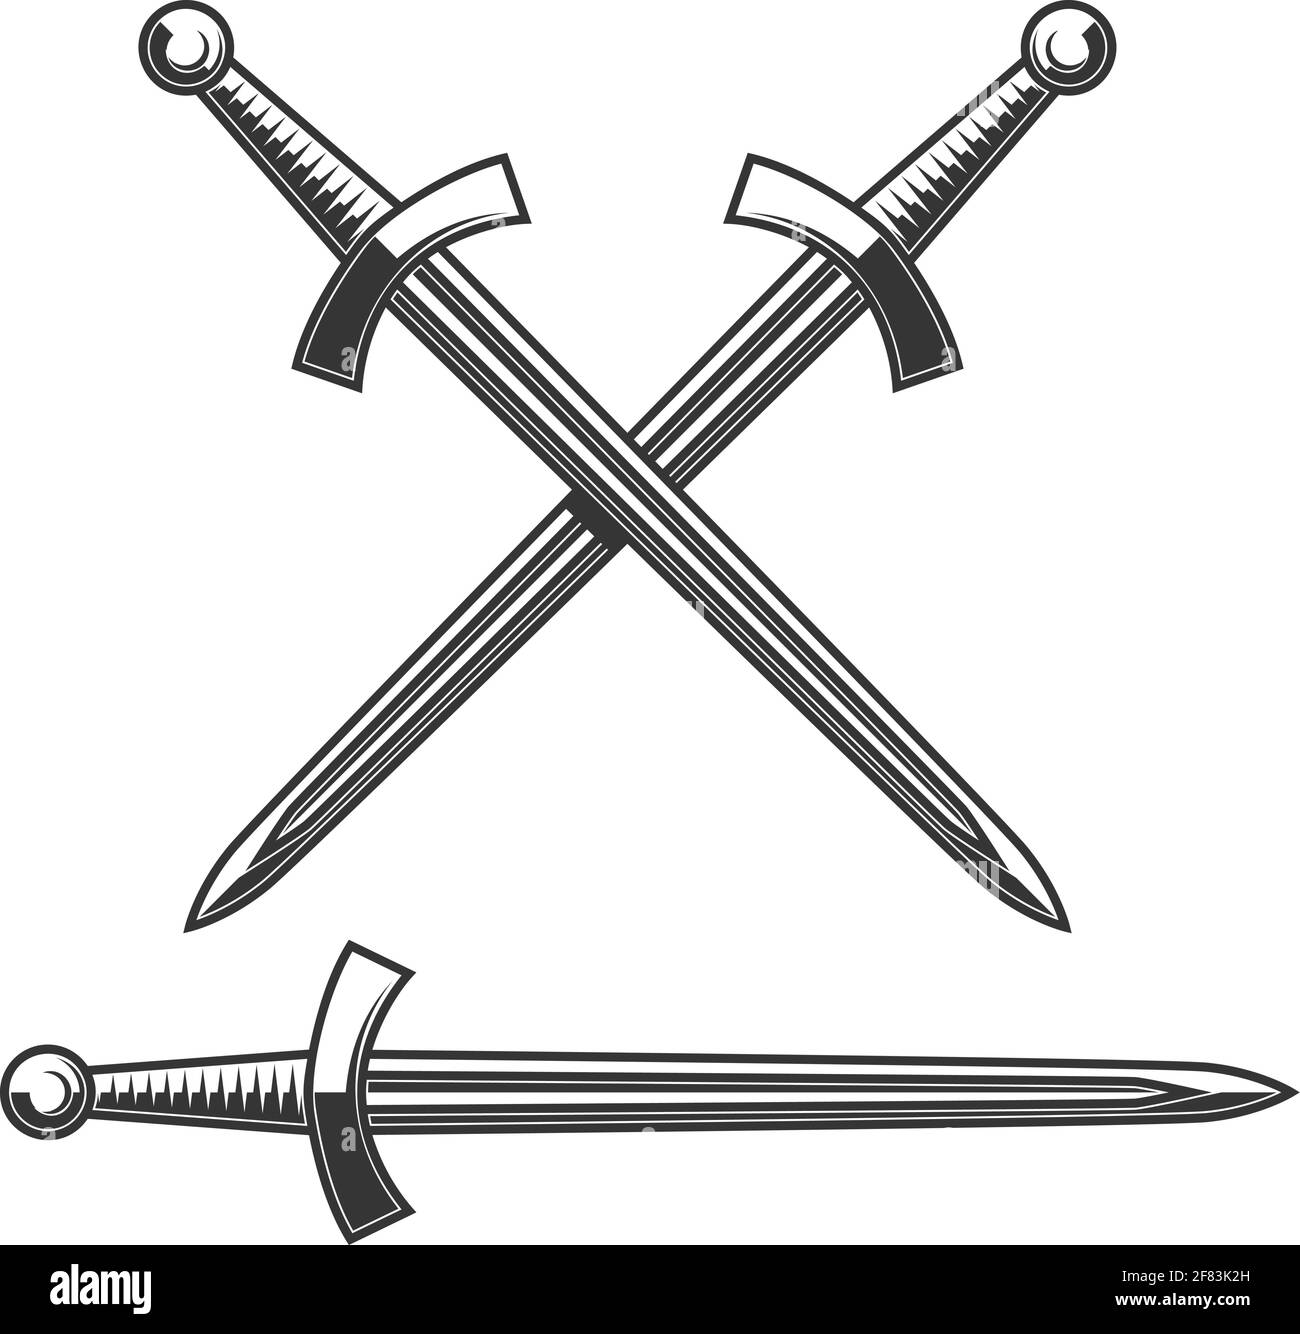 Darstellung des mittelalterlichen Ritterschwertes. Gestaltungselement für Plakat, Karte, Banner, Schild. Vektorgrafik Stock Vektor